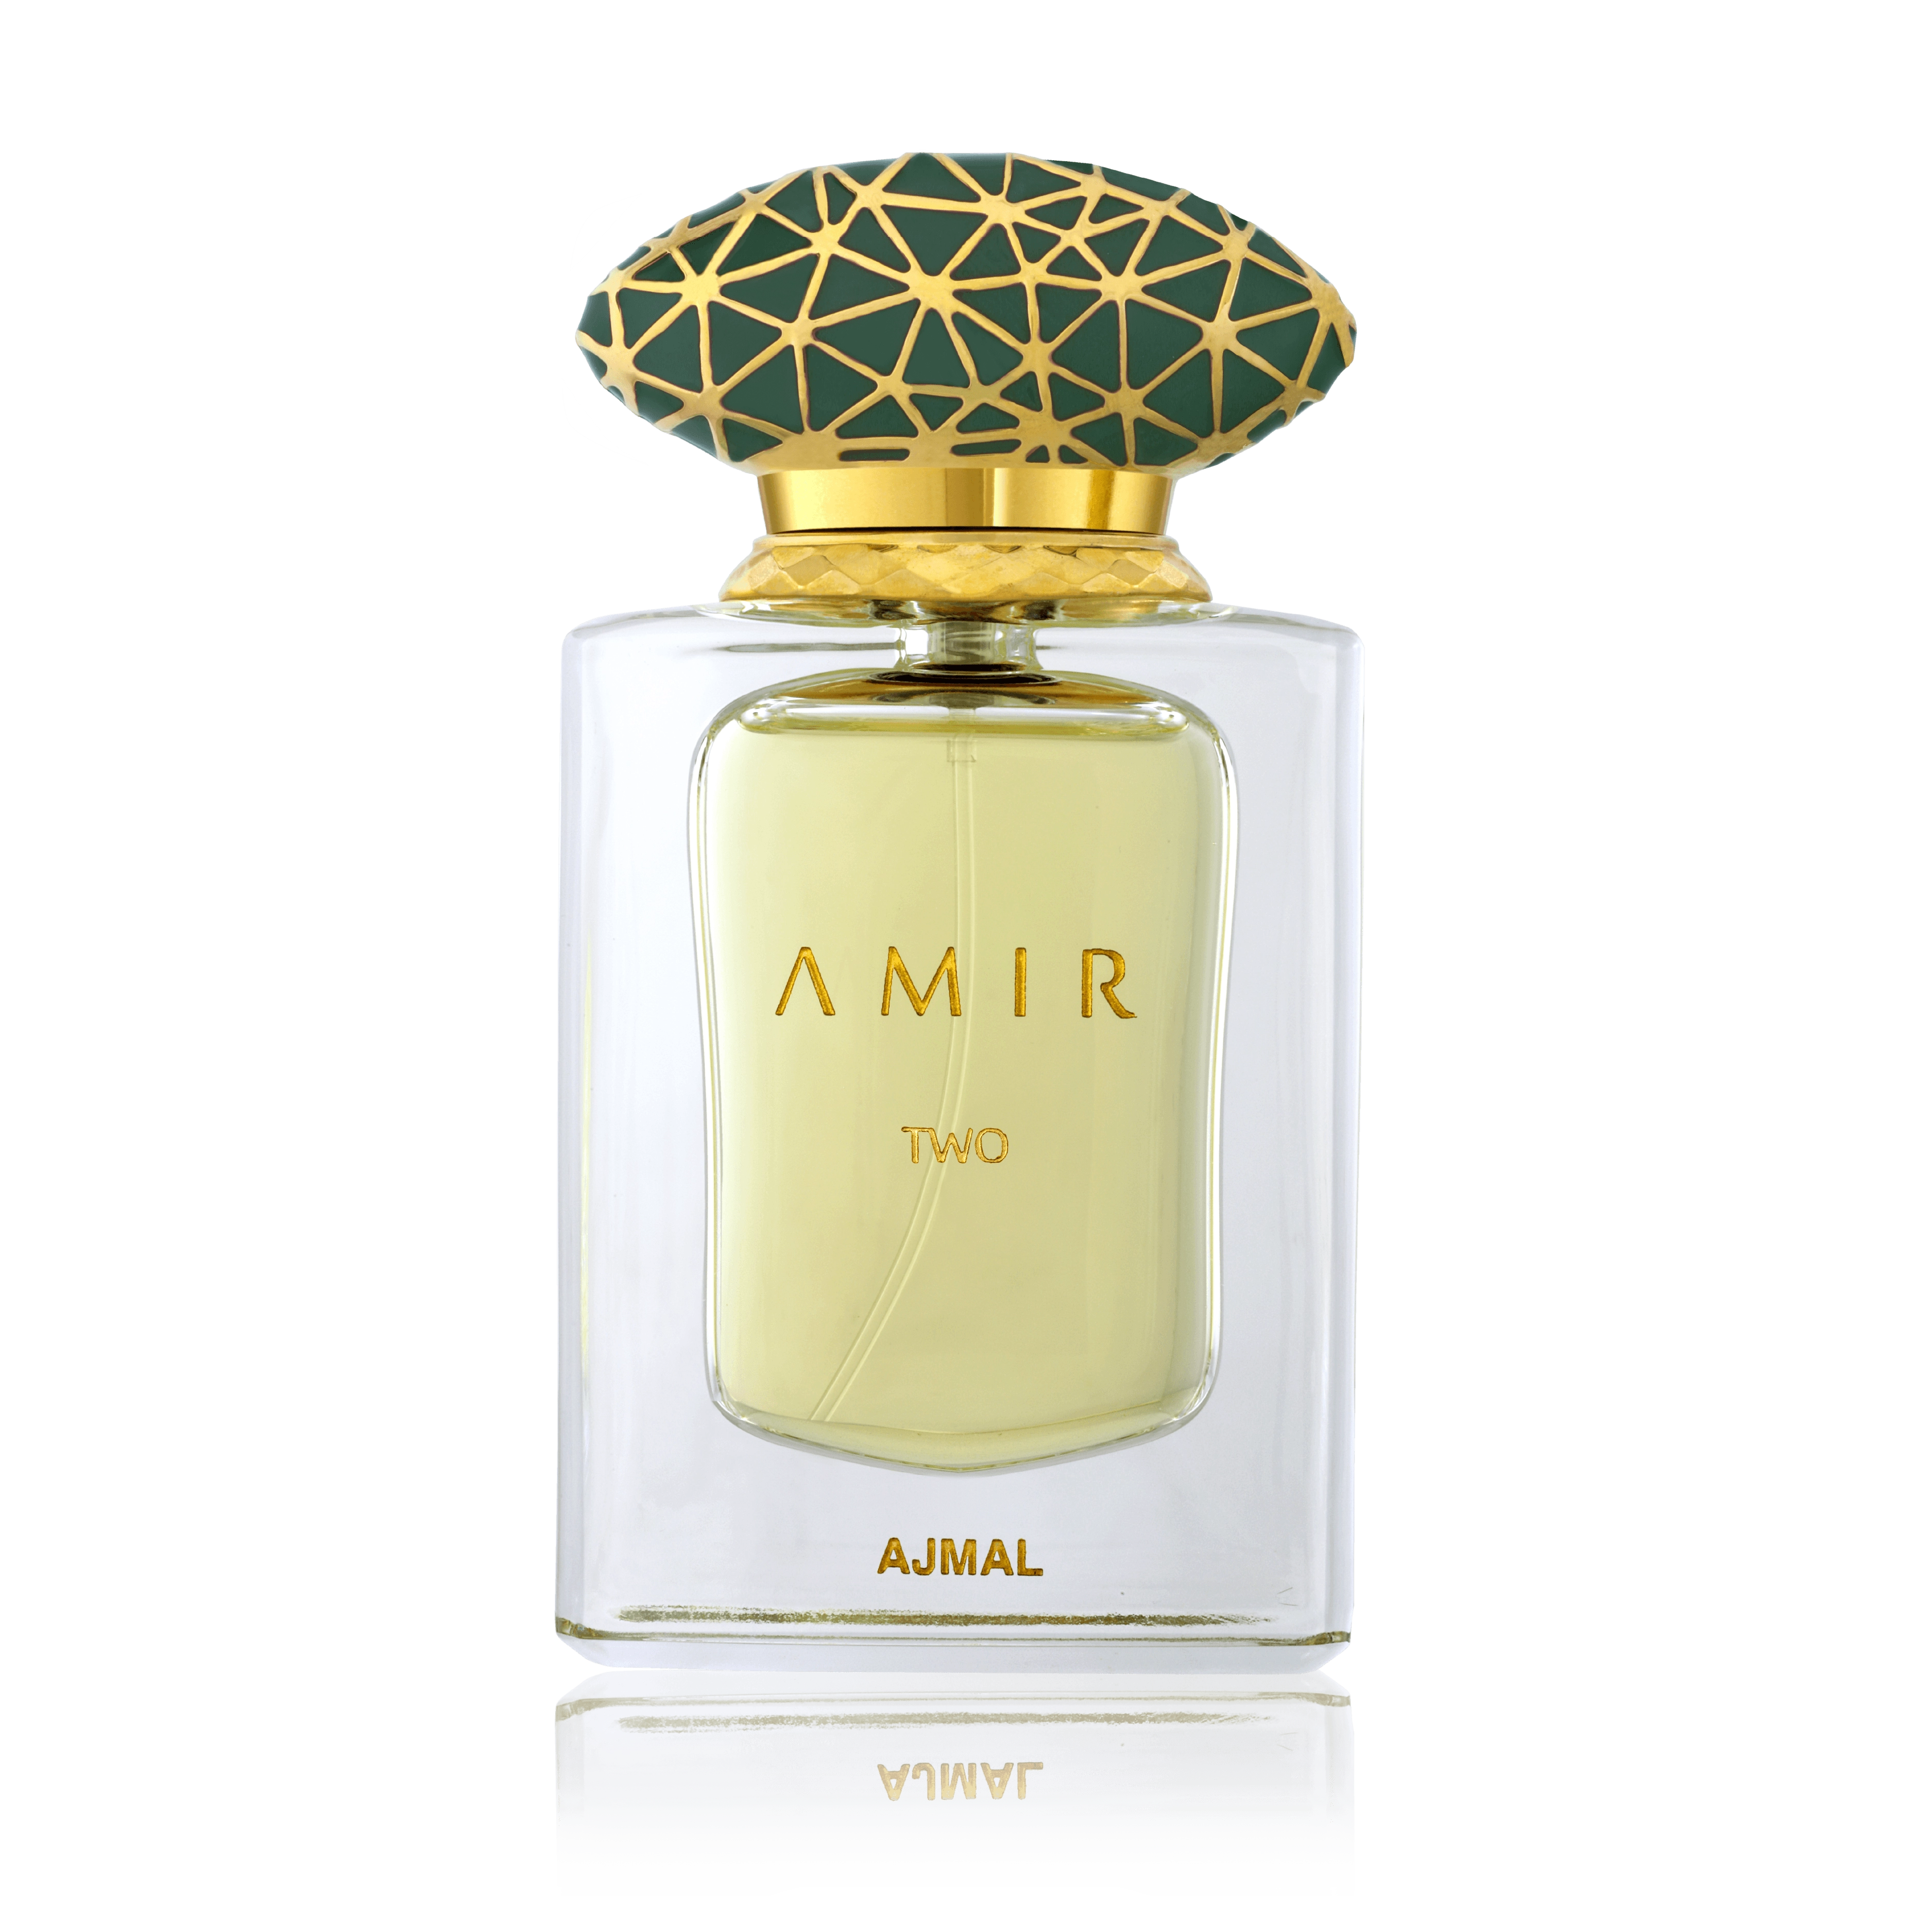 Amir Two